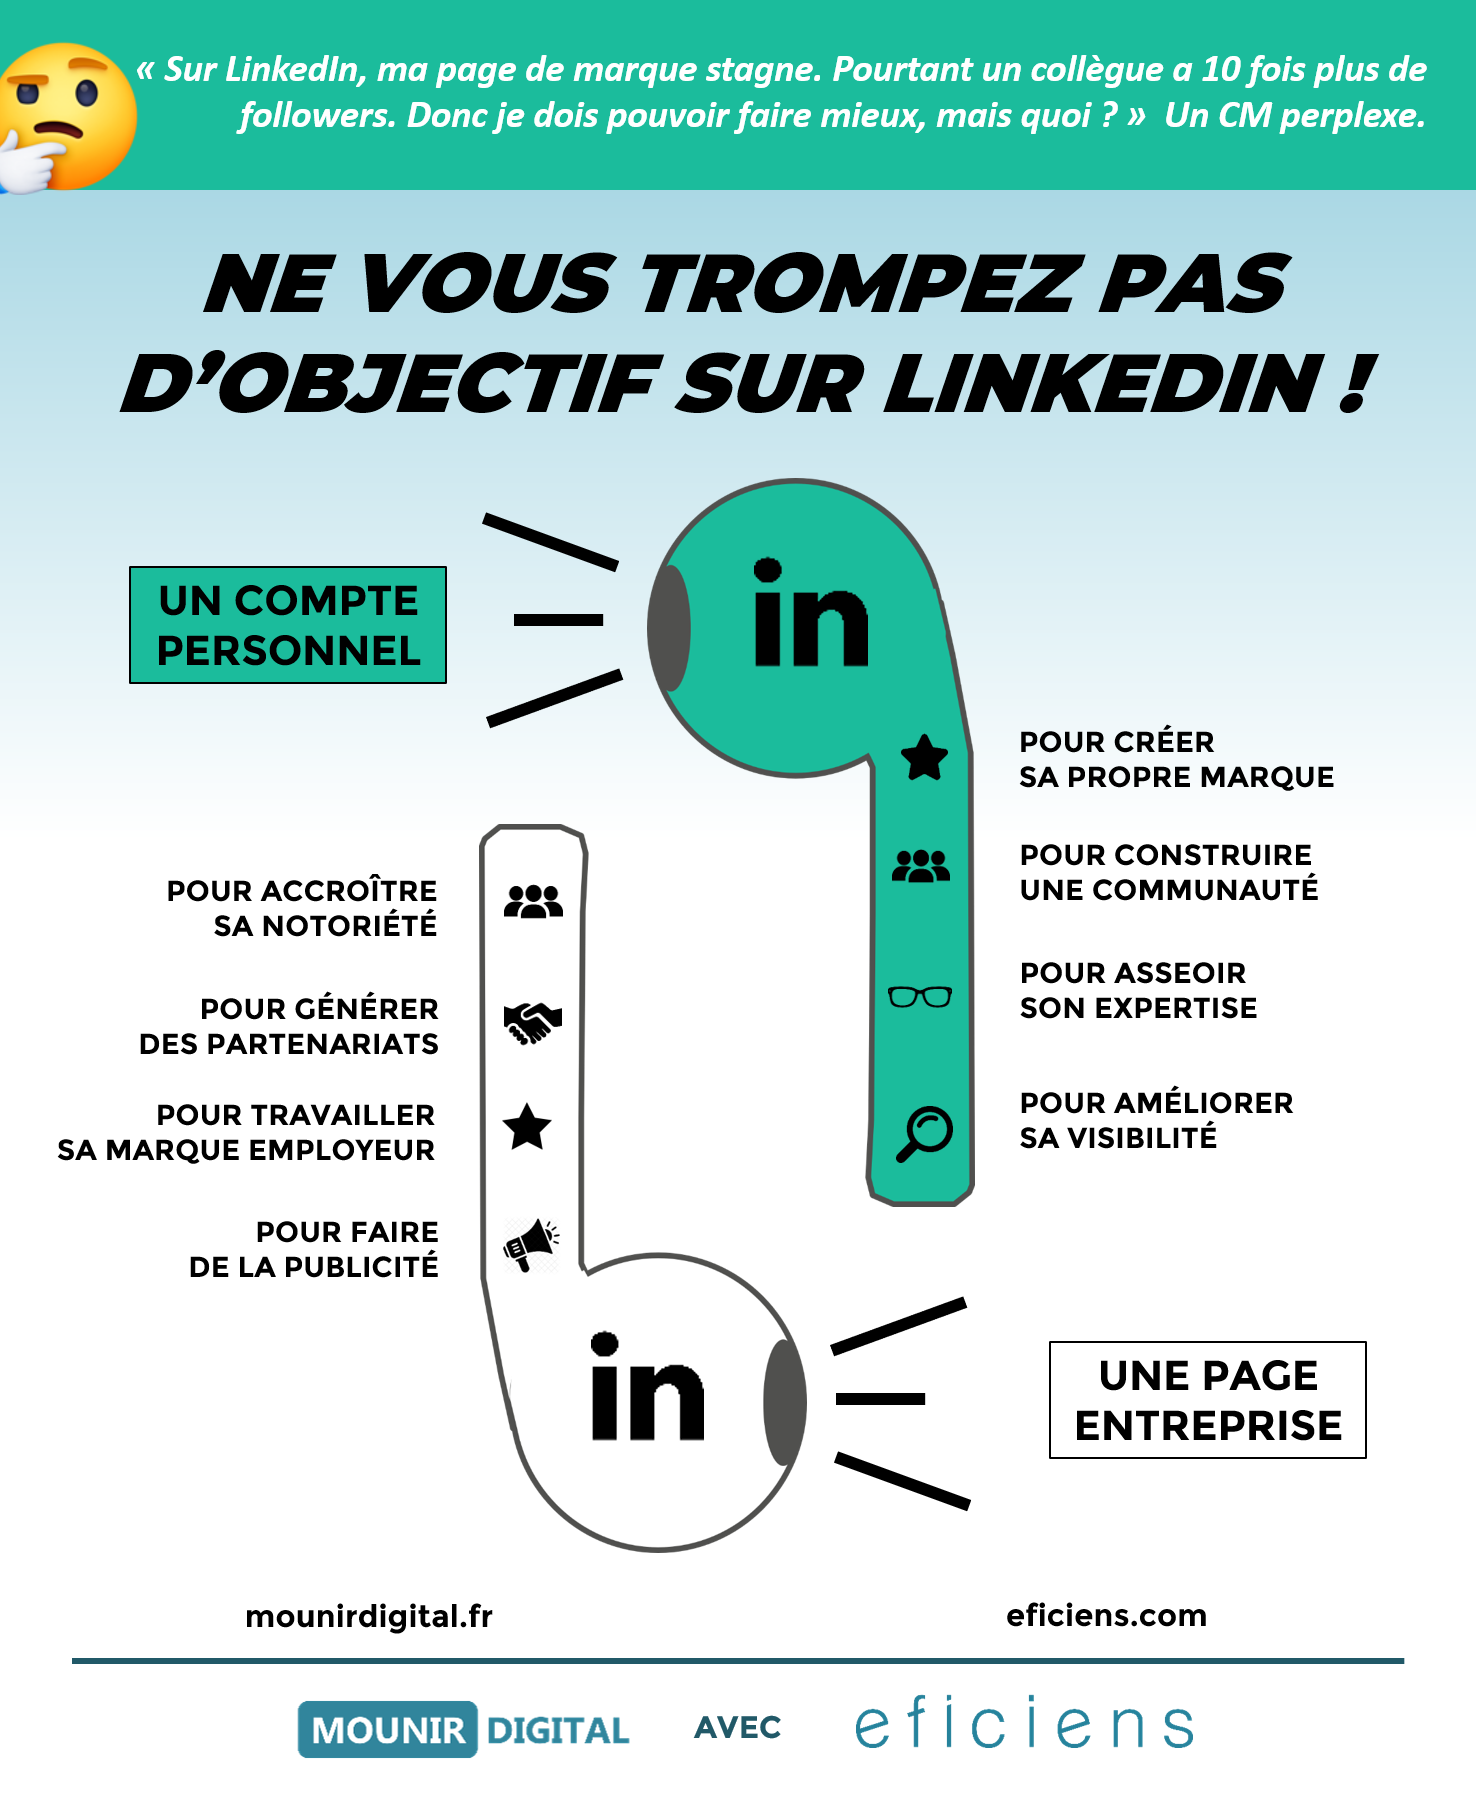 Page entreprise ou compte personnel ? - Infographie collab's avec Eficiens - Mounir Digital